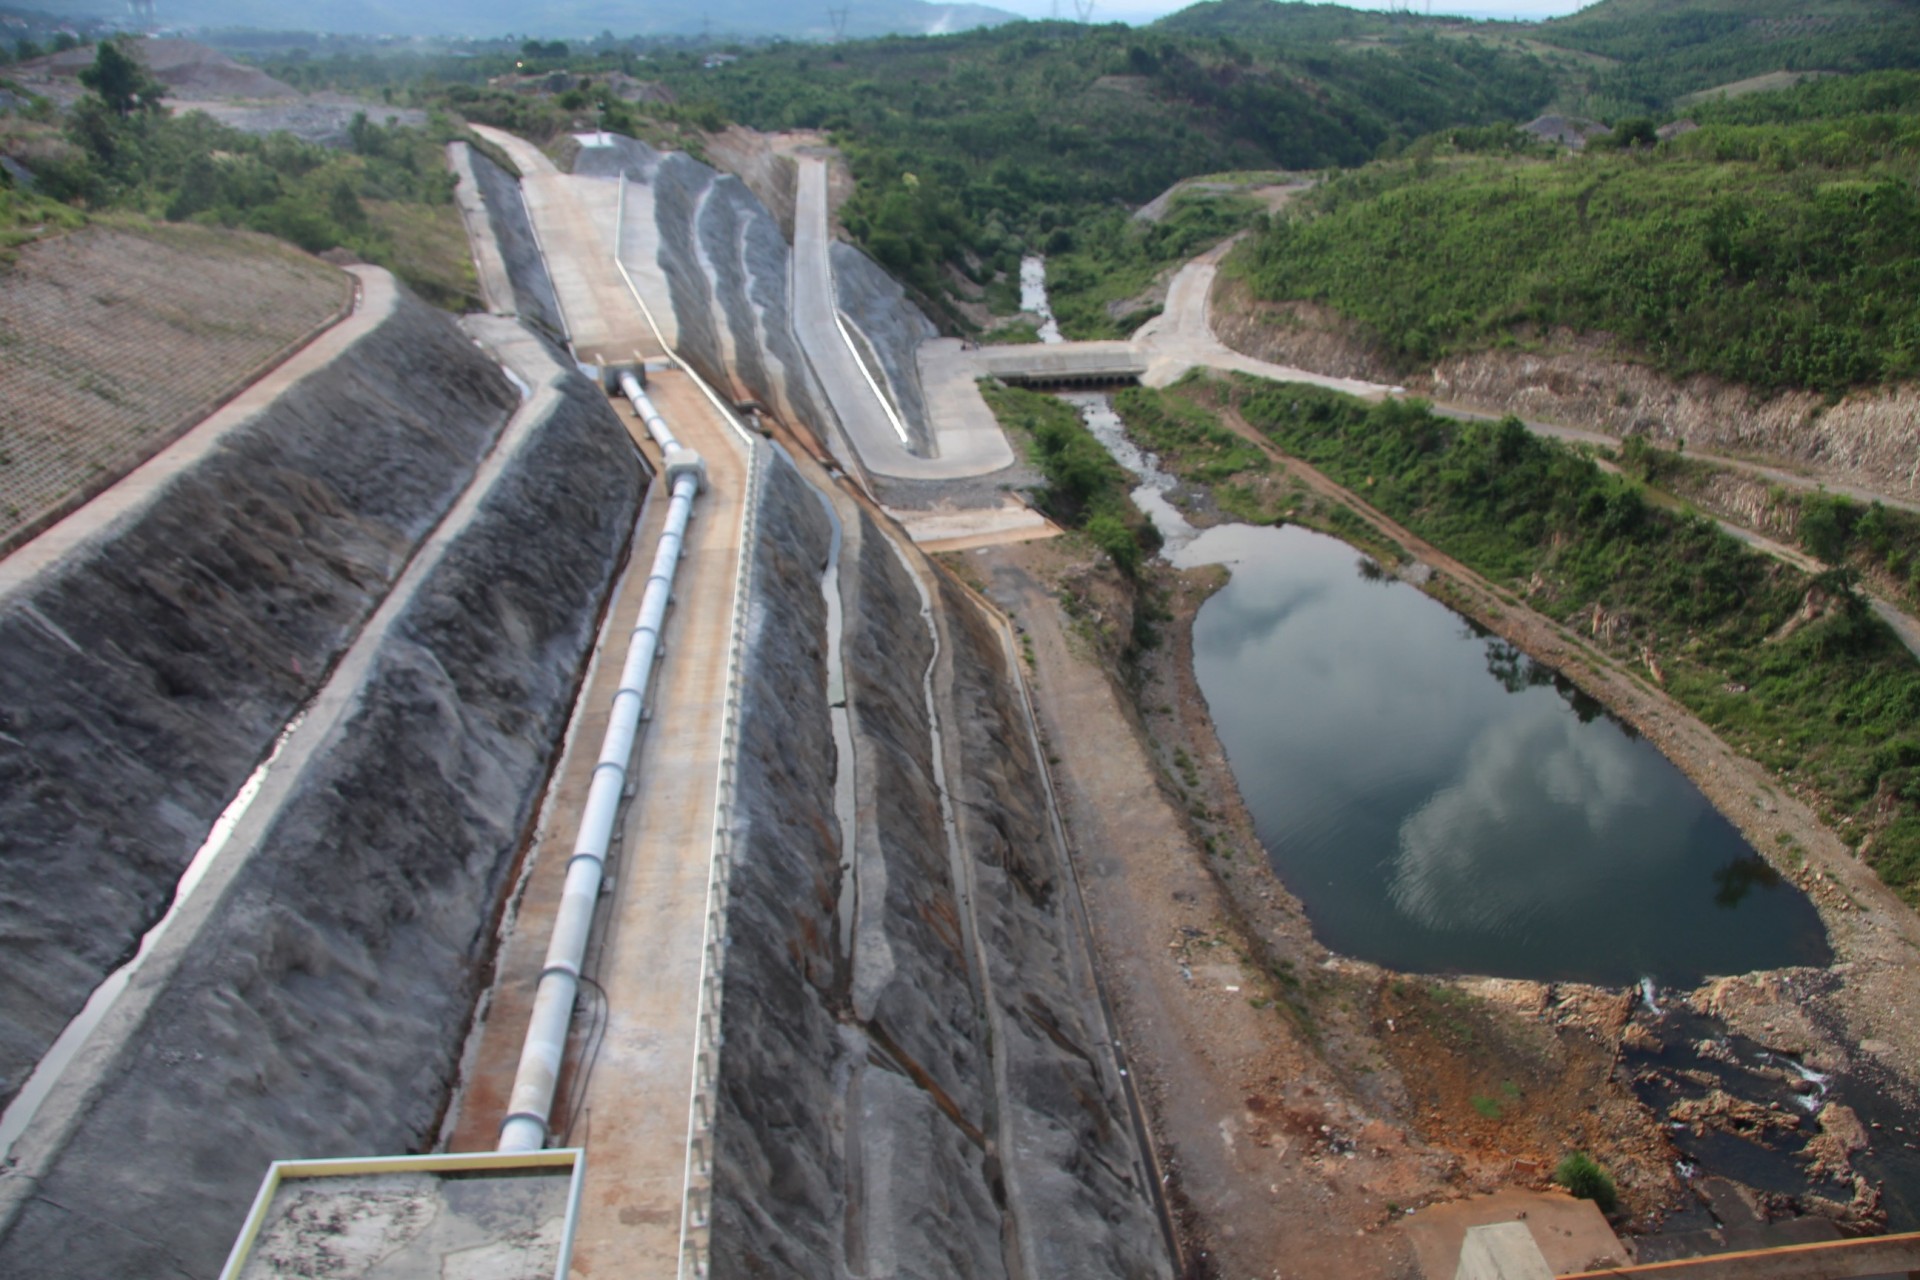 Công trình đầu tiên trên địa bàn tỉnh Đắk Lắk và khu vực Tây Nguyên có đập ngăn sông tạo hồ chứa được thiết kế là đập bê tông trọng lực, sử dụng phụ gia tro bay.